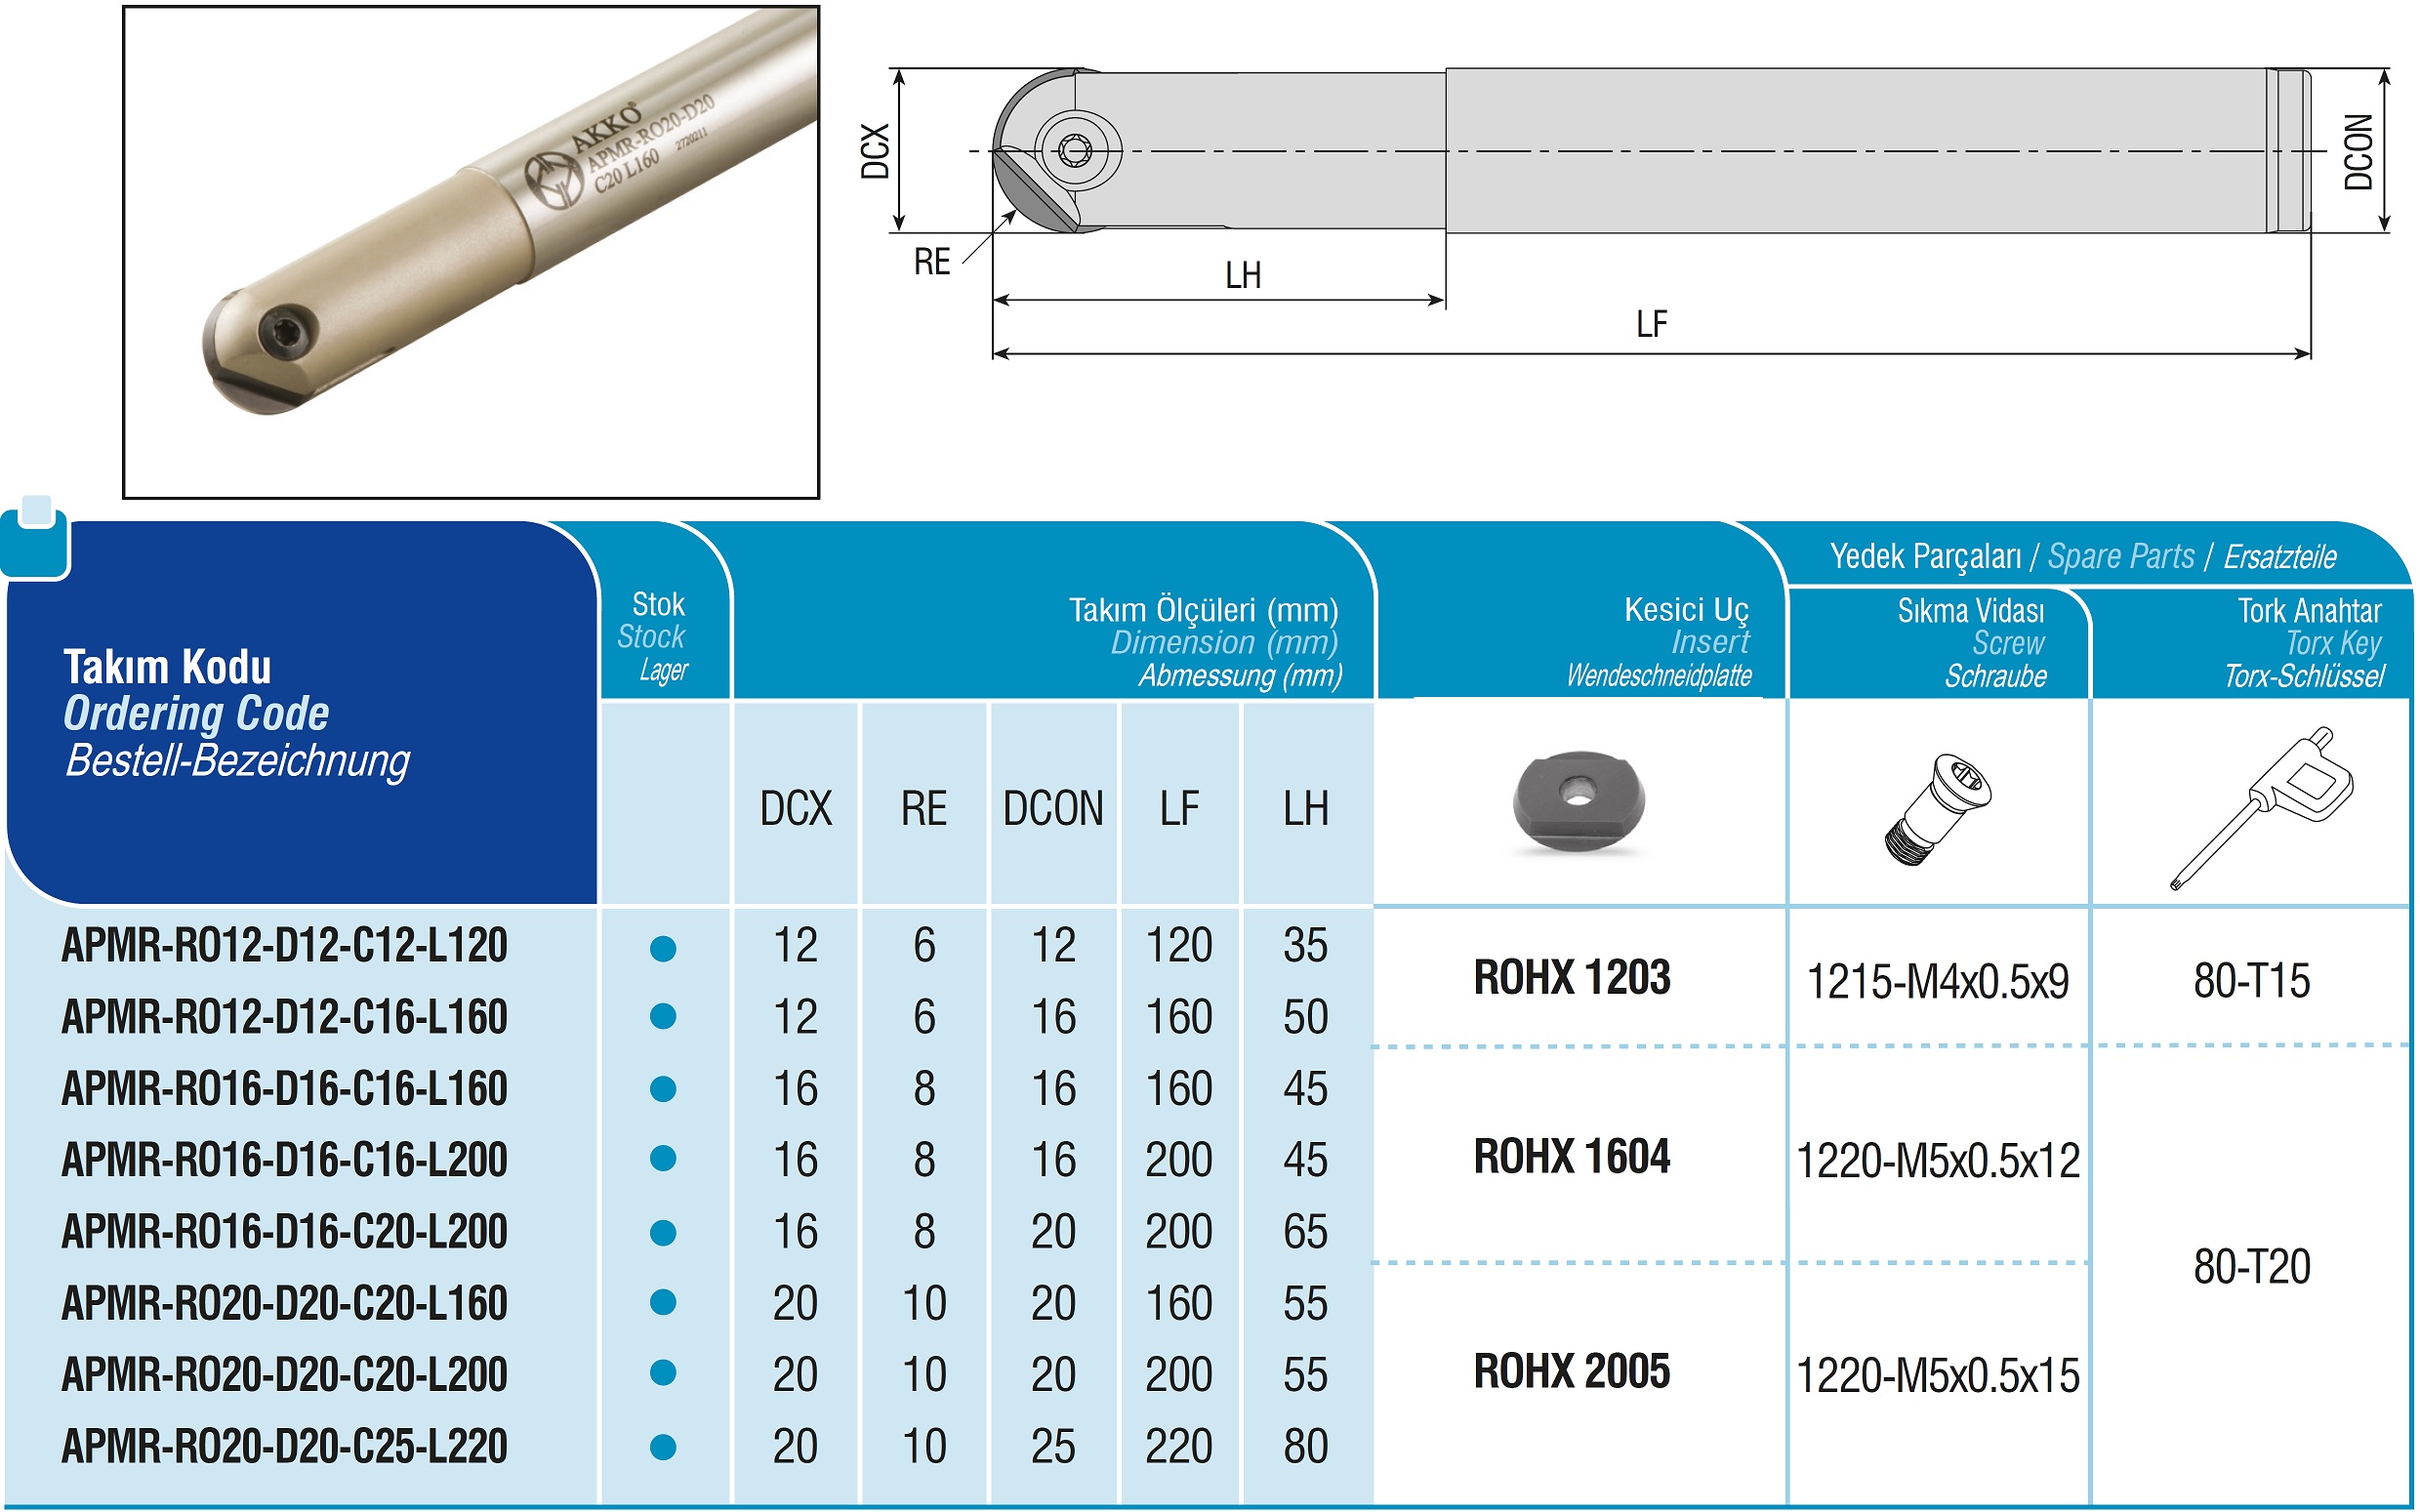 AKKO-Kugelkopierfräser für Wendeplatten, ø 16 mm, kompatibel mit ZCC ROHX 1604
Schaft-ø 20, ohne Innenkühlung